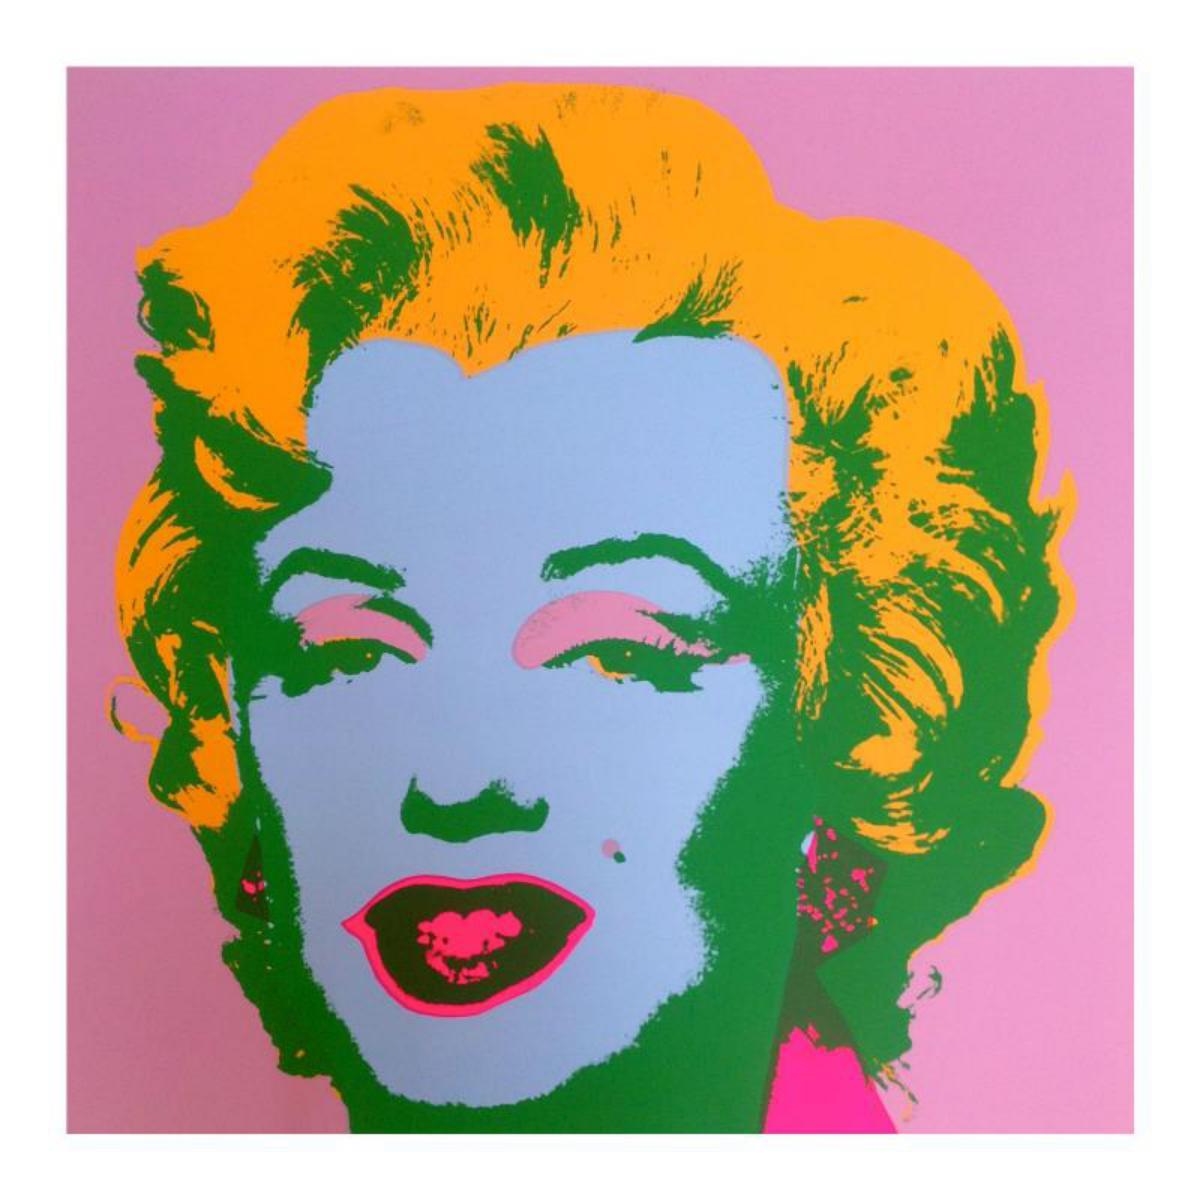 Andy Warhol Marilyn Monroe Print, Orange Marilyn Monroe Poster, Andy Warhol  Poster, Warhol Prints, Pop Art Poster, Andy Warhol Art Print -  Canada